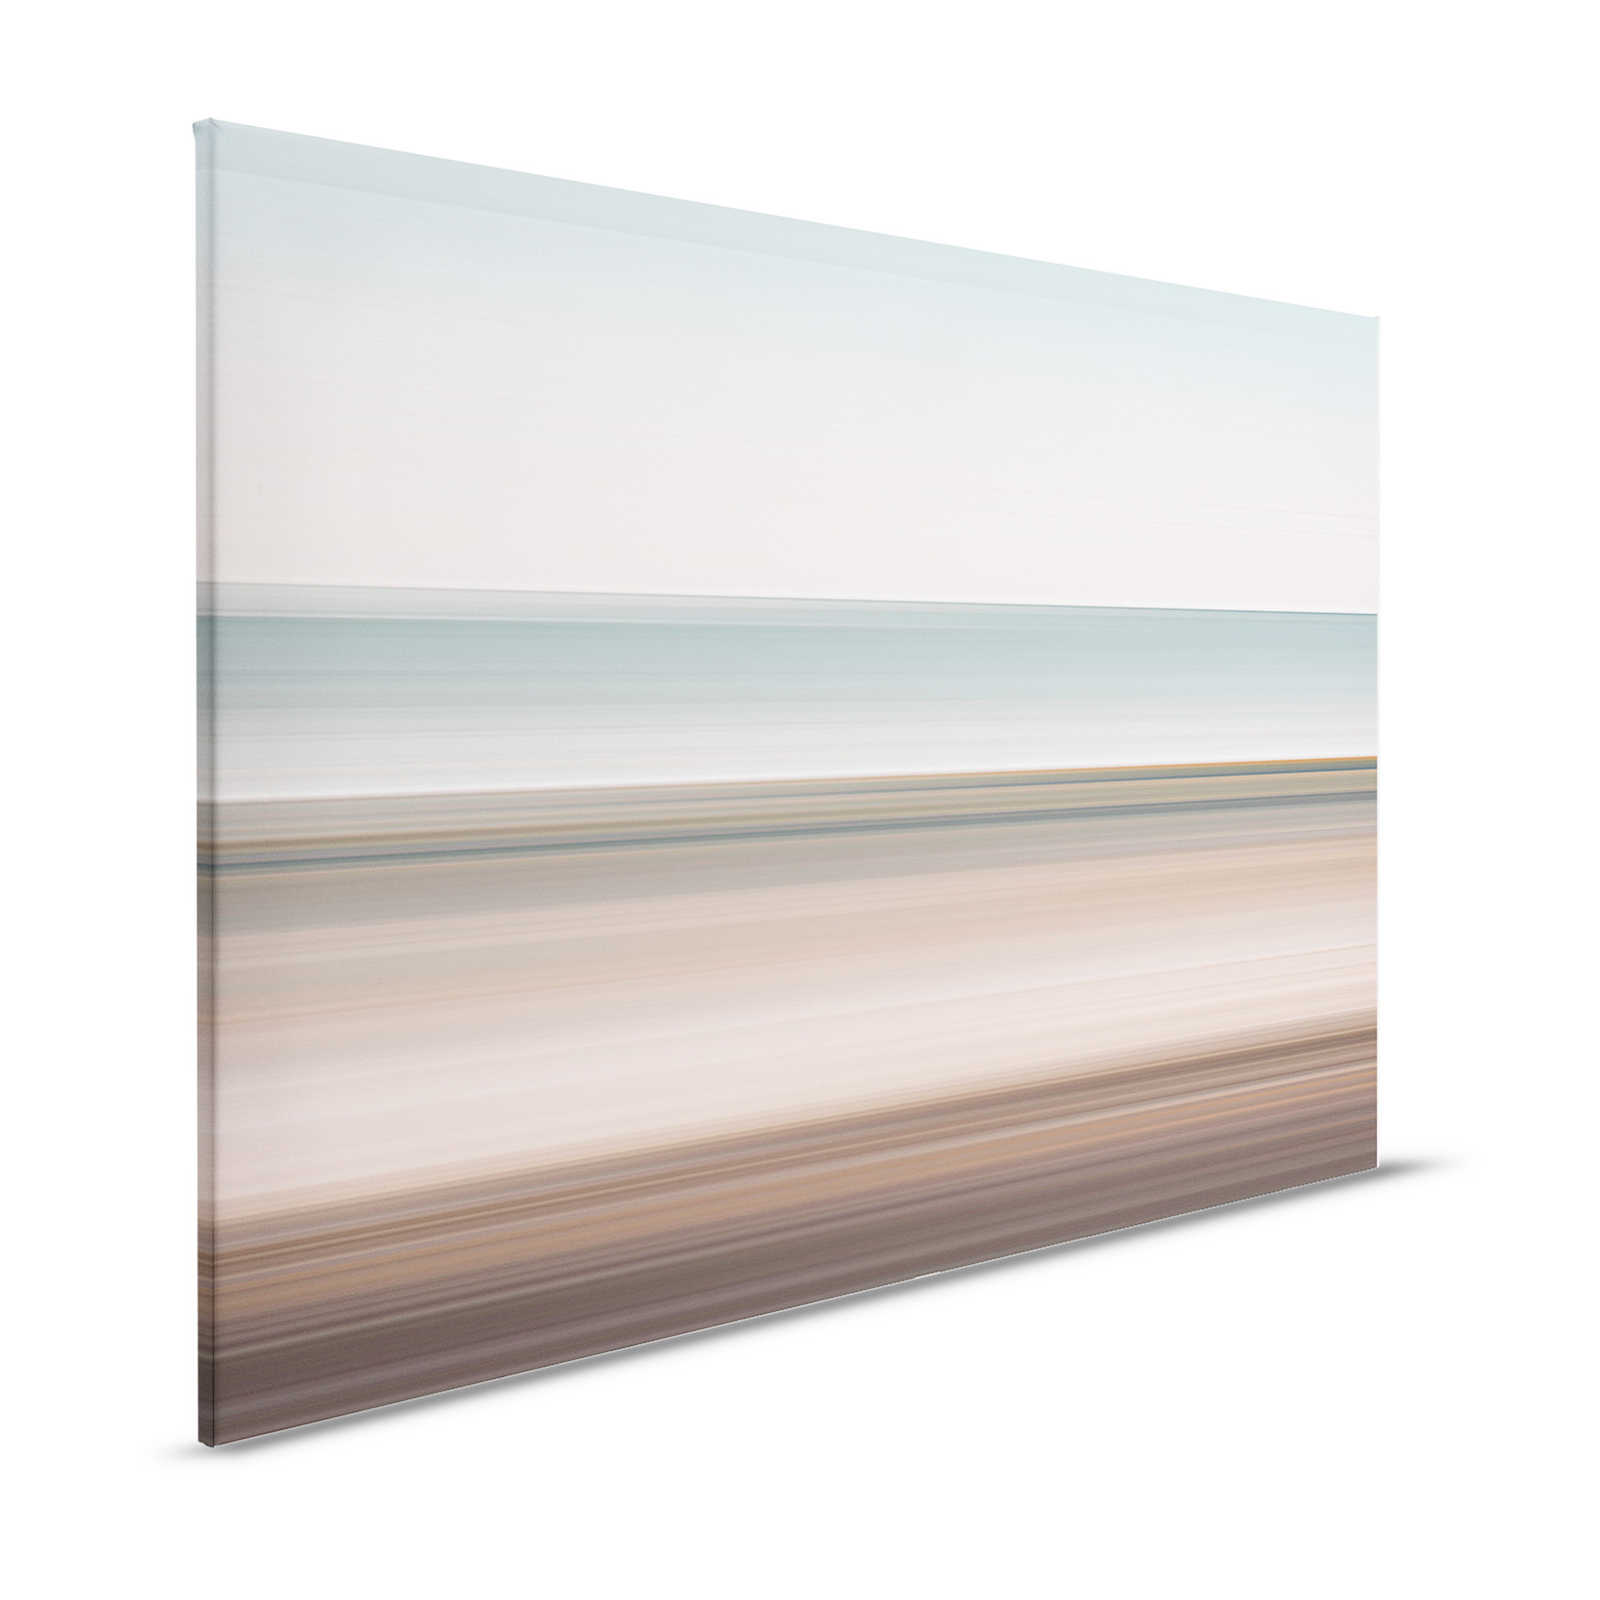 Horizon 2 - Canvas schilderij abstract landschap met lijndesign - 1,20 m x 0,80 m
